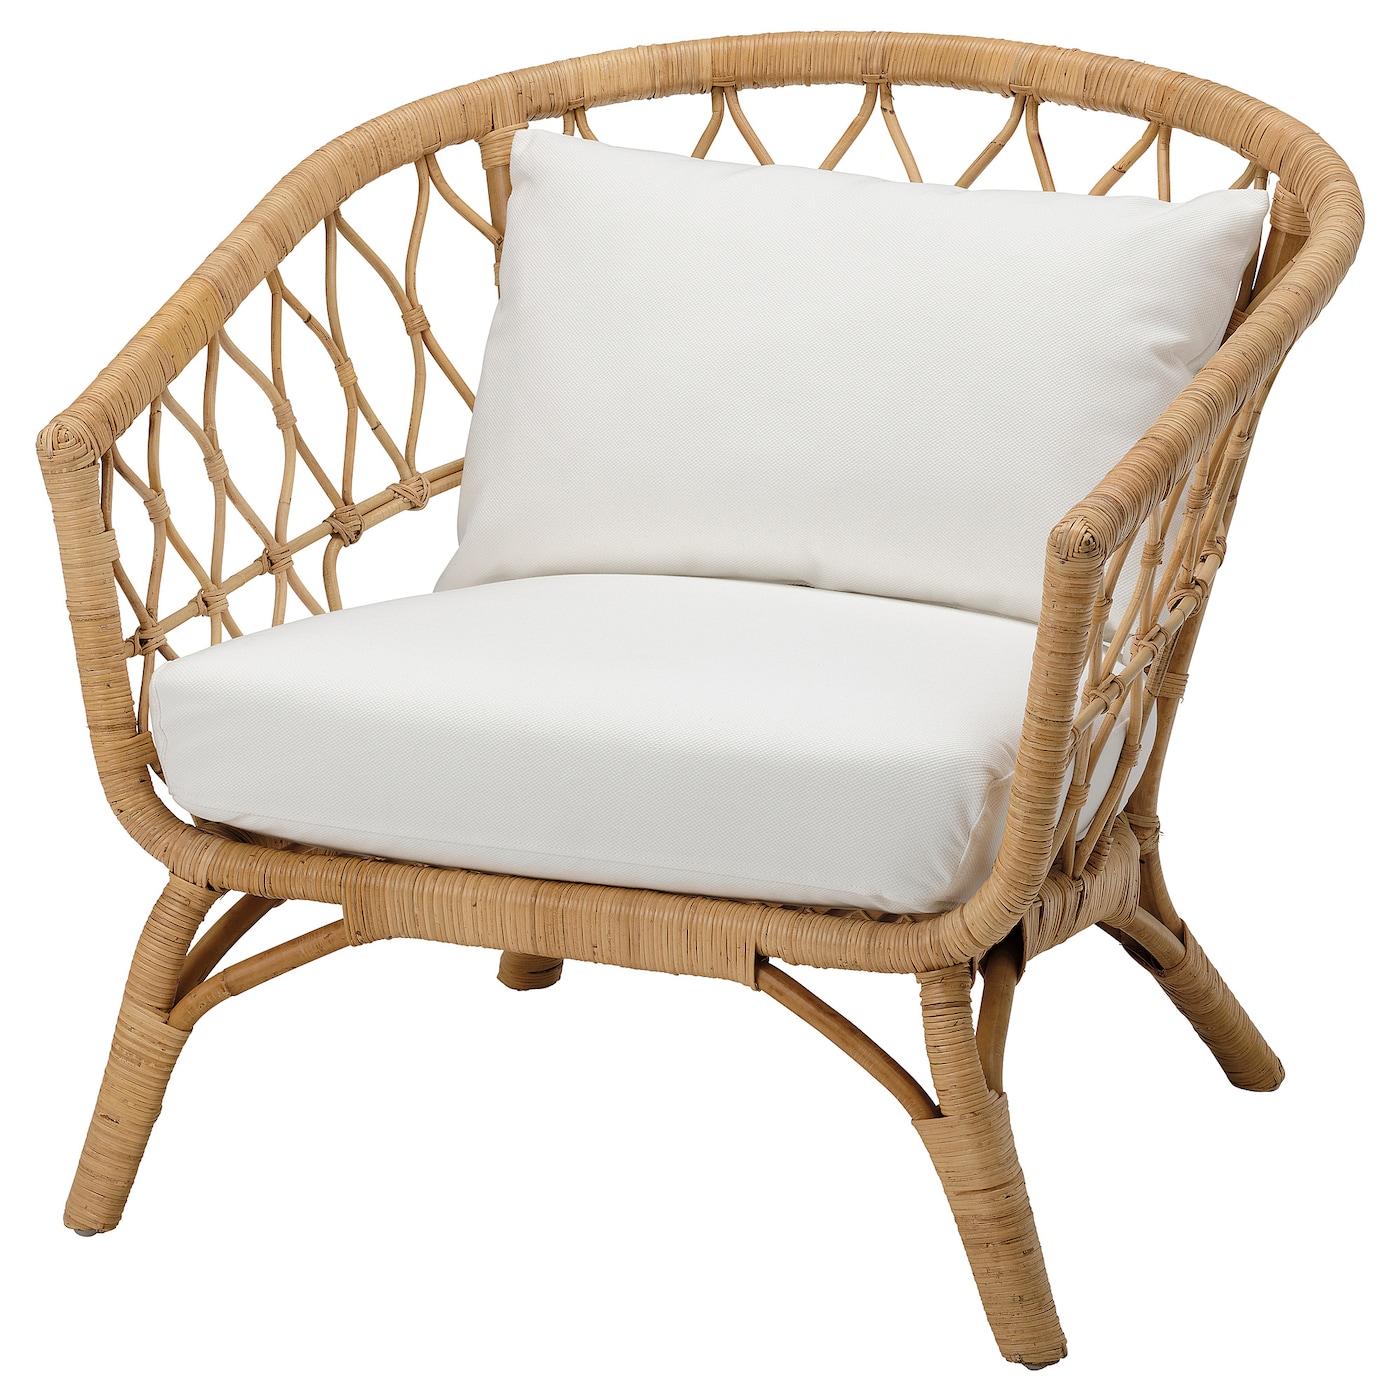 Кресло садовое - IKEA STOCKHOLM, 79х87 см, светло-коричневый/белый, СТОКГОЛЬМ ИКЕА